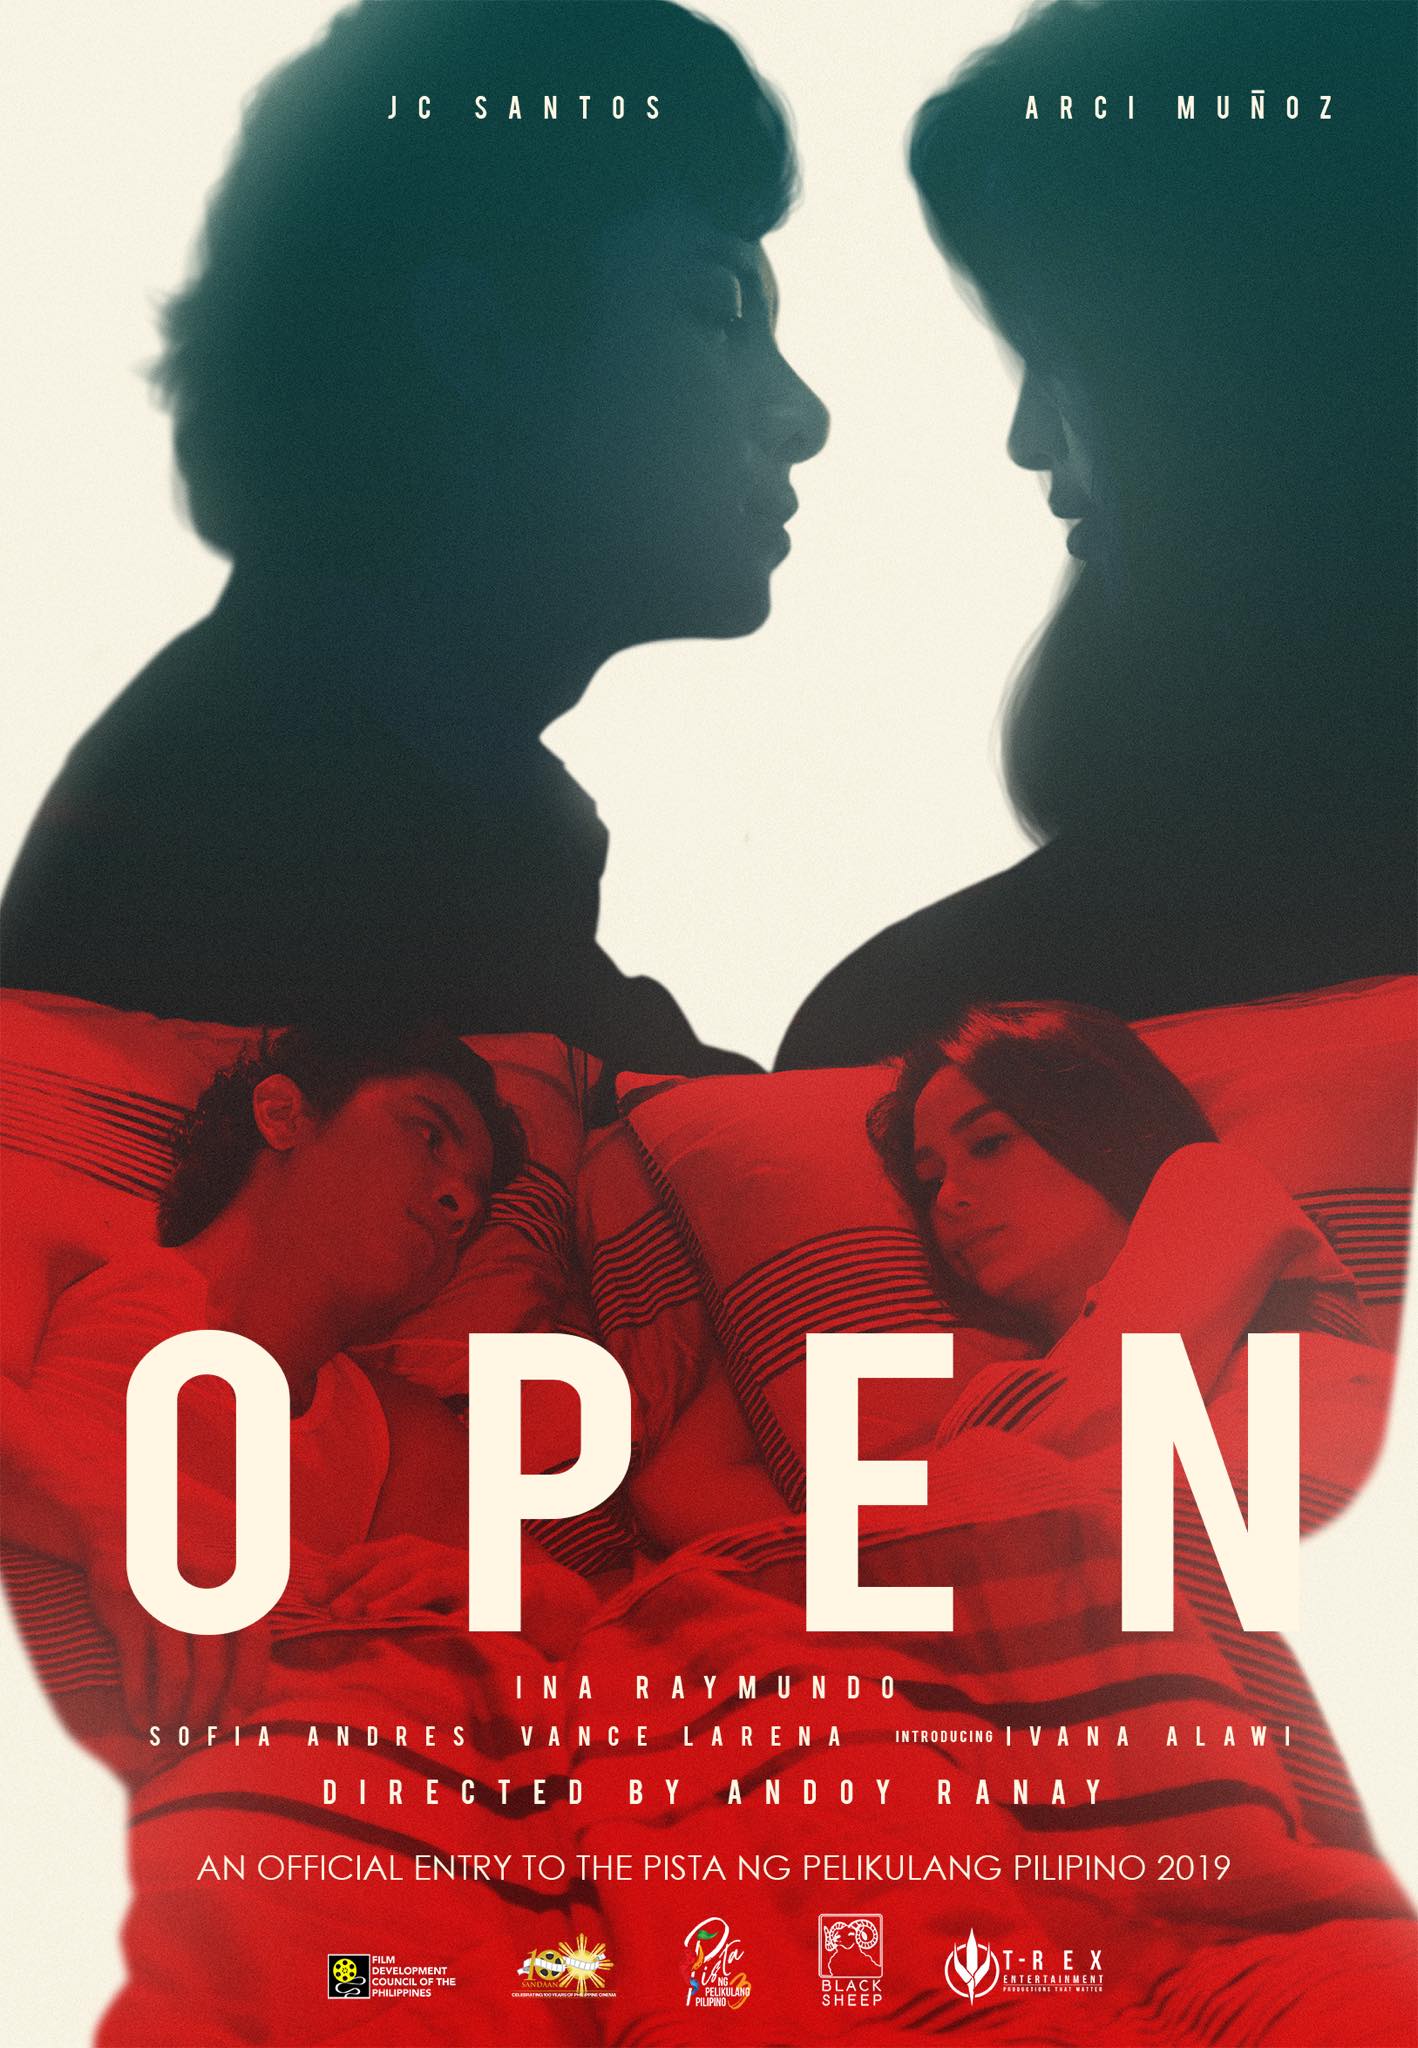 Poster for Open. Photo: Pista ng Pelikulang Pilipino Facebook page.